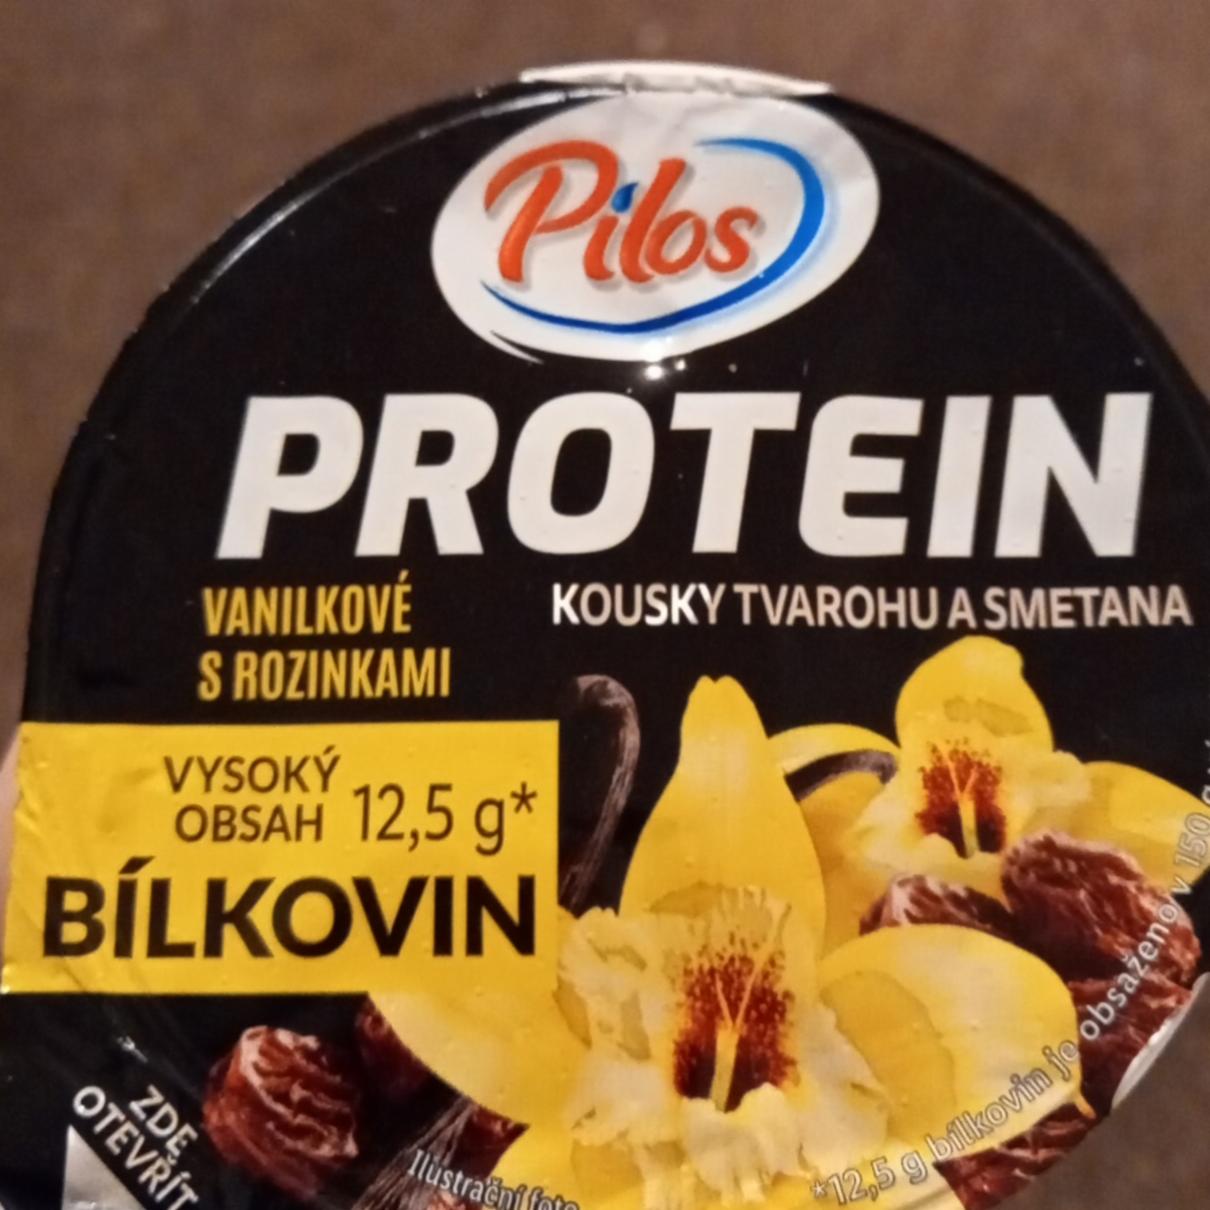 Фото - Protein kousky tvarohu a smetana vanilkové s rozinkami Pilos